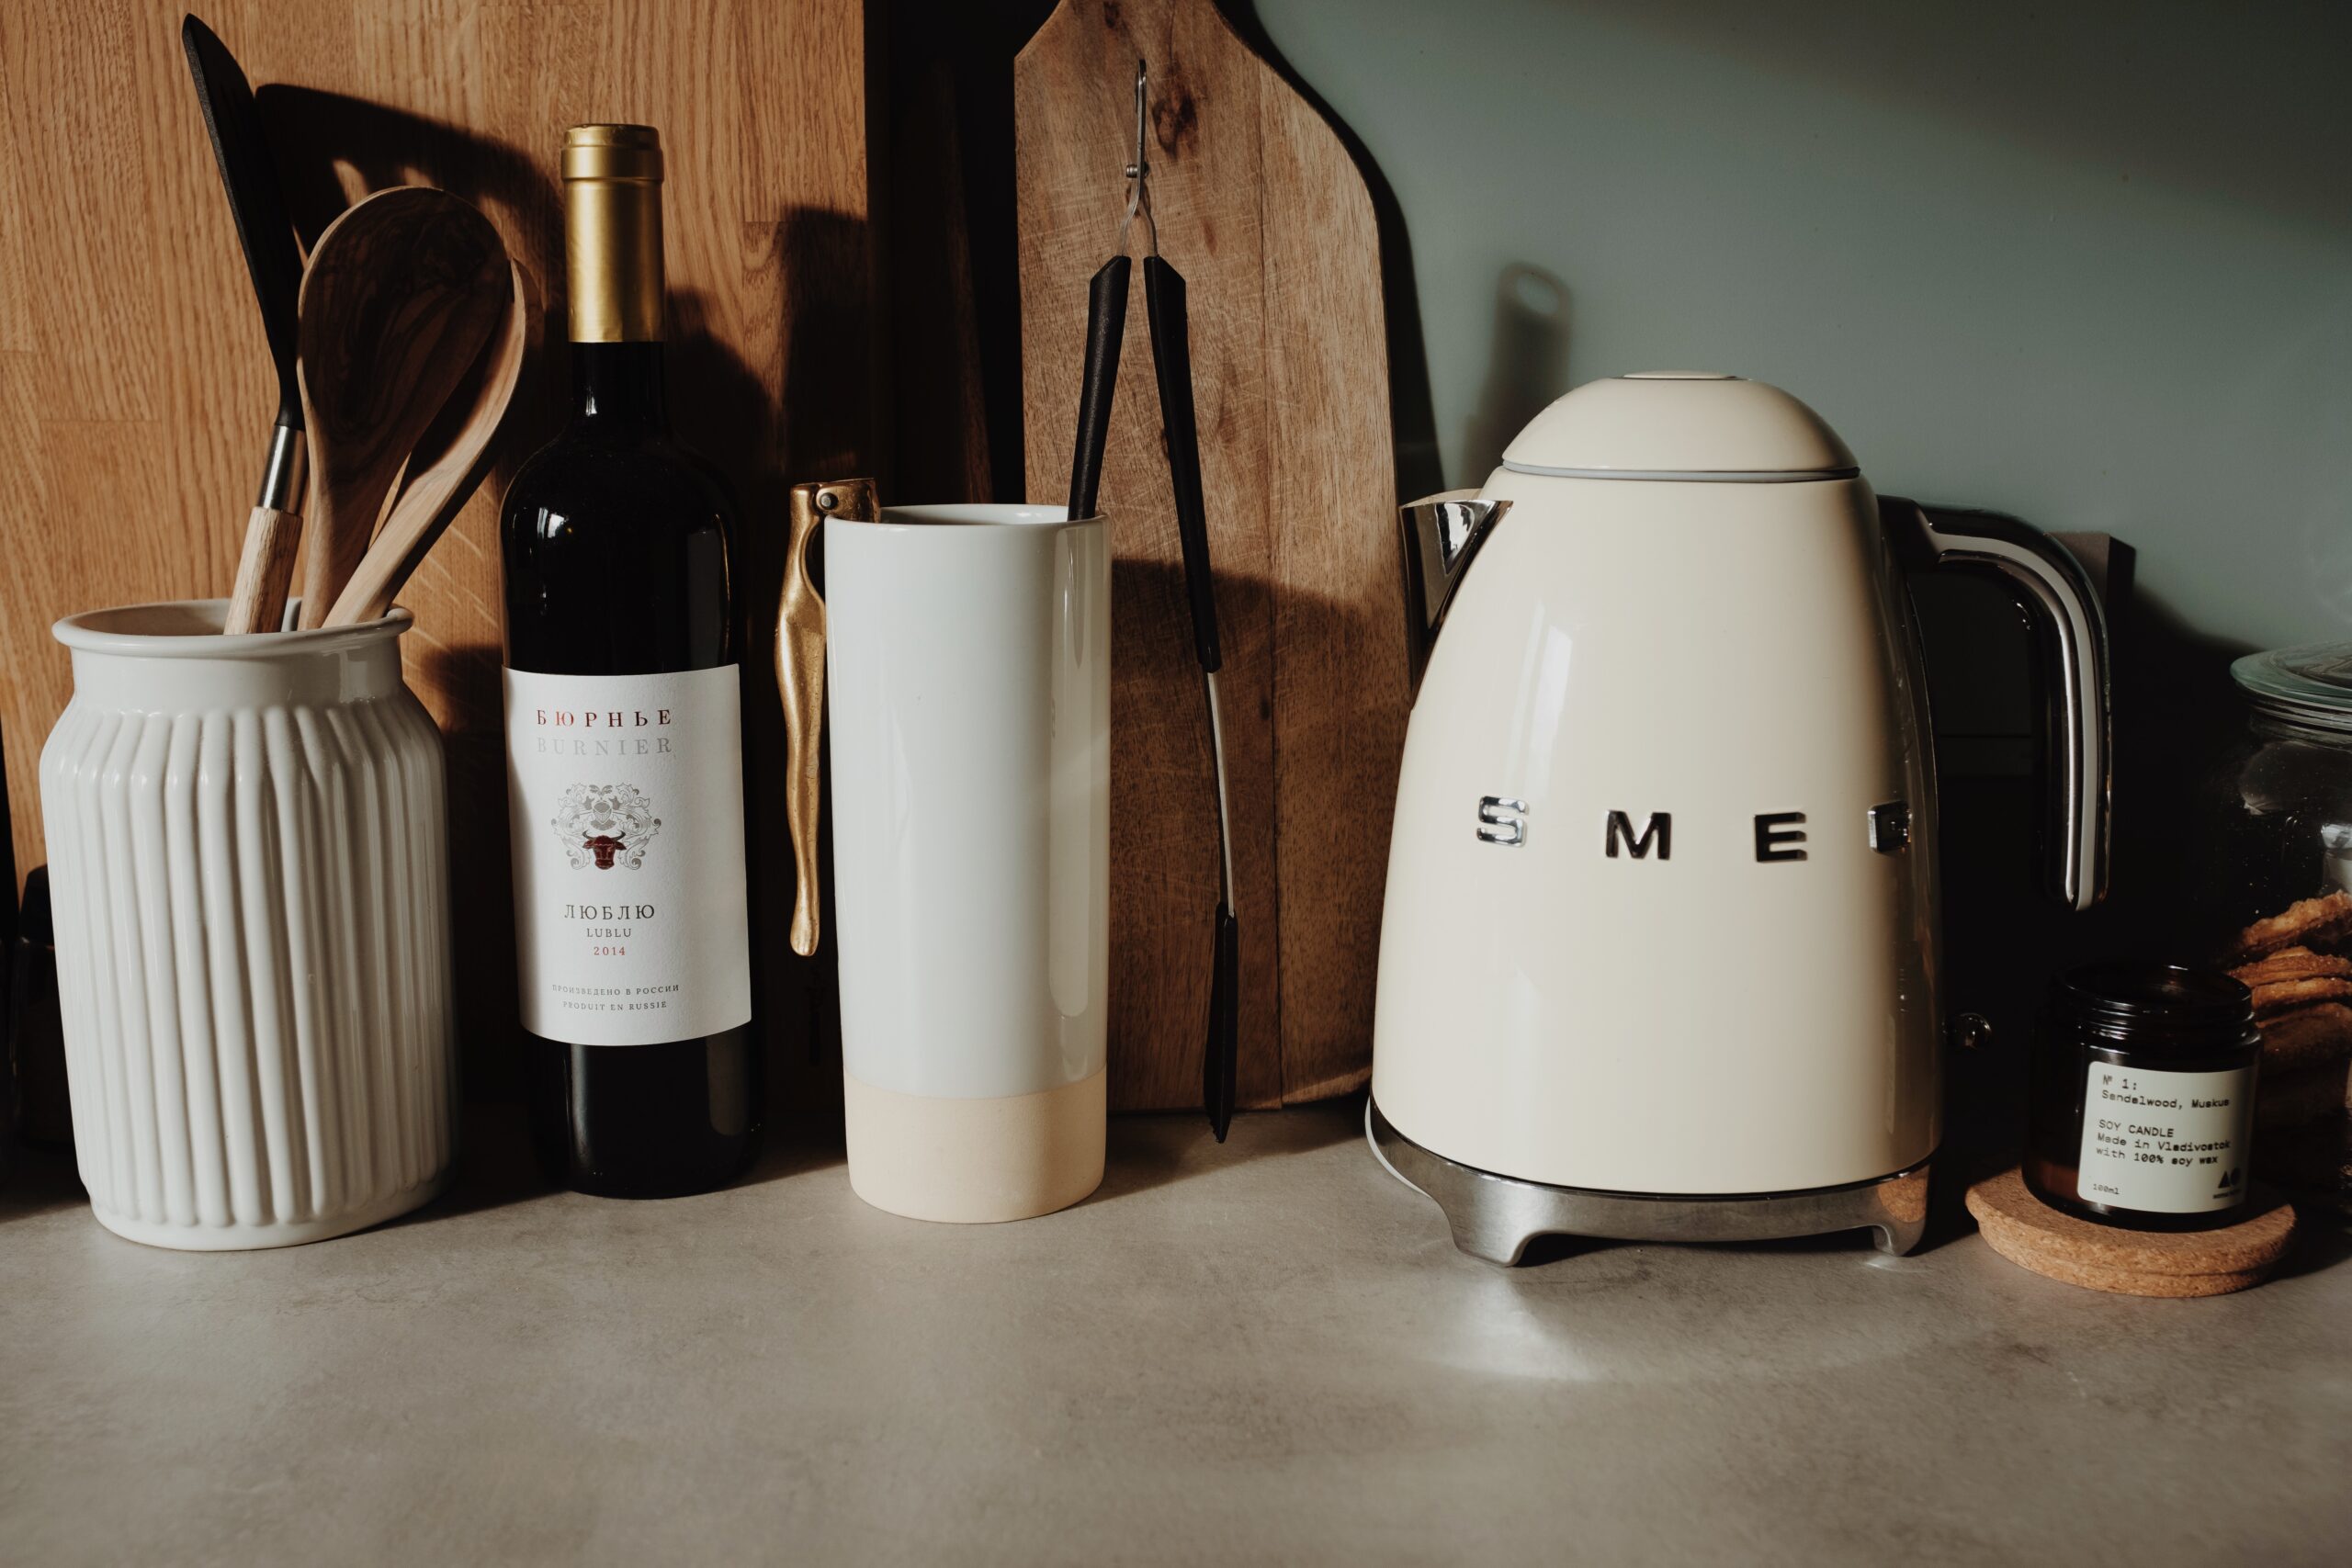 Smeg kettle in kitchen